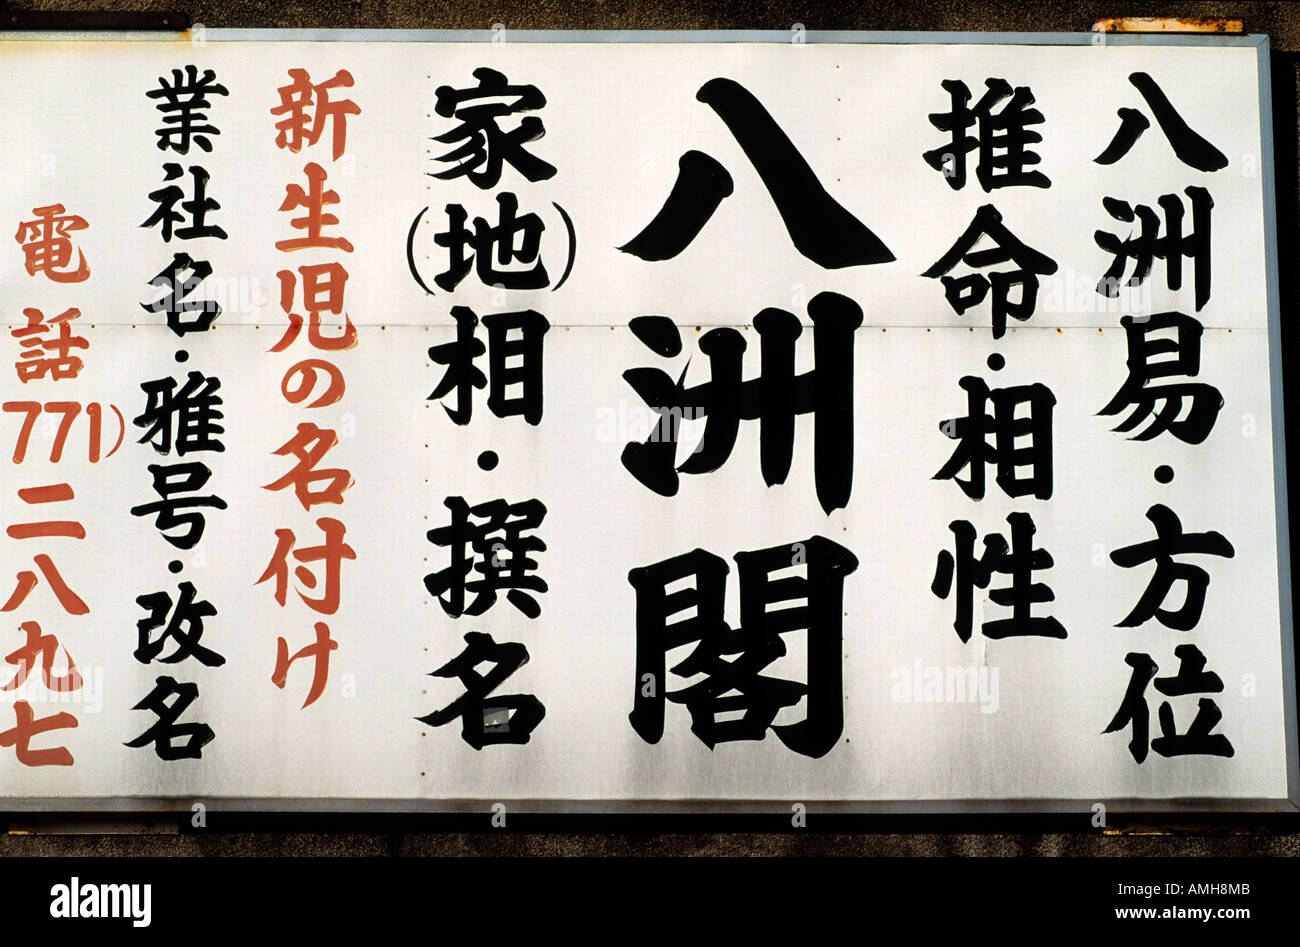 Japan, Kansai, Osaka, japanische Schriftzeichen Stock Photo